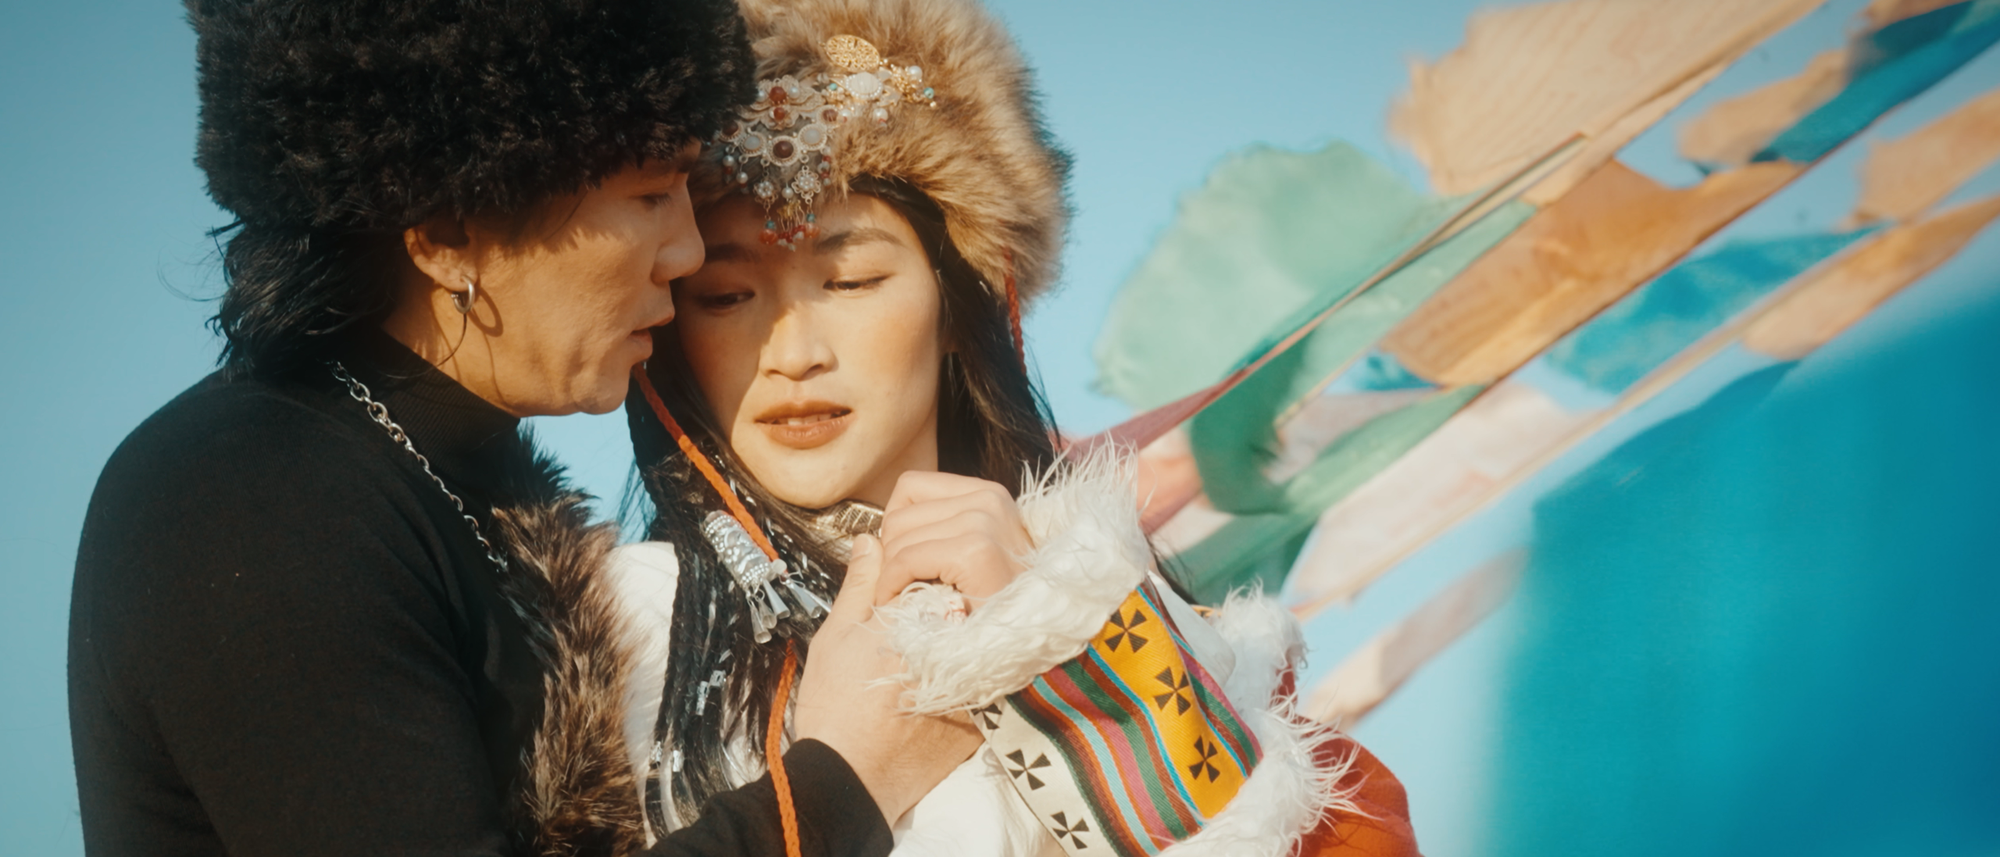 Mars Anh Tú sang Trung Quốc săn tuyết để quay MV mới, suýt bị bỏng lạnh- Ảnh 3.